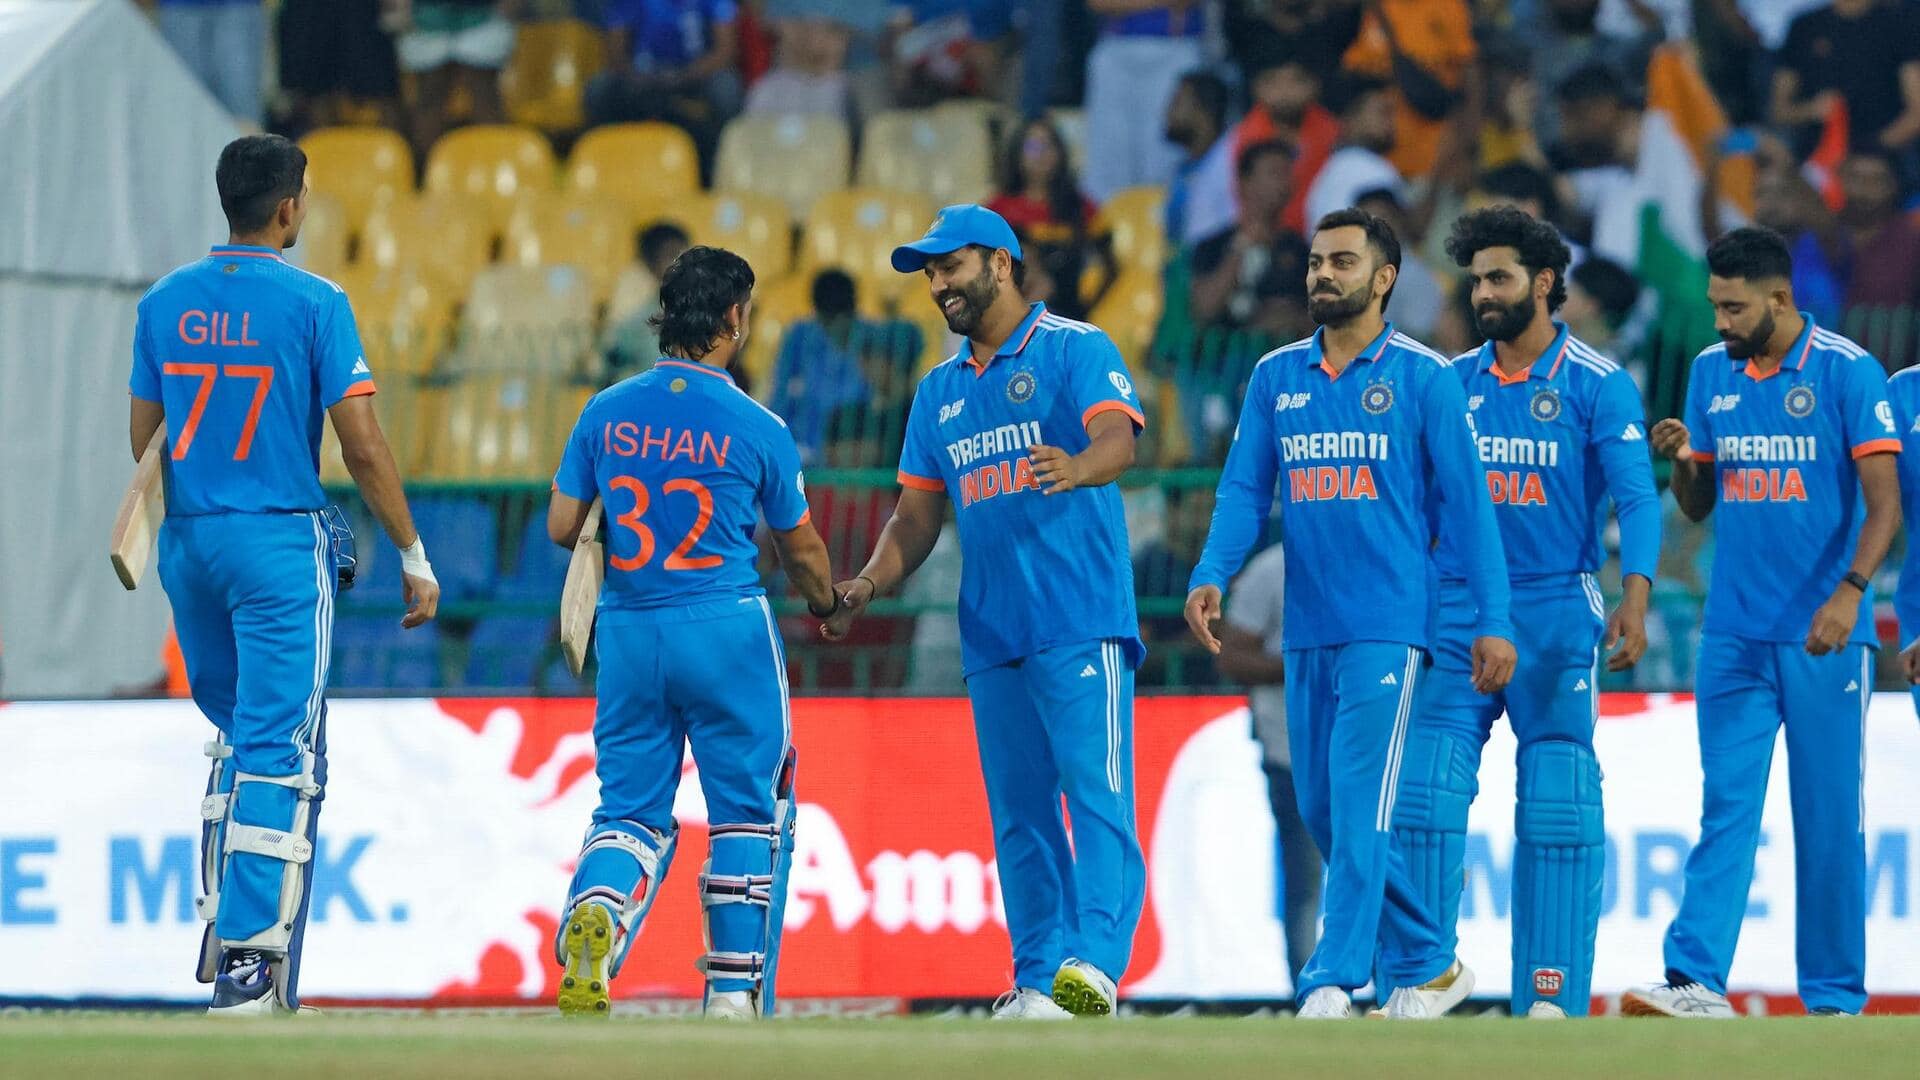 भारतीय टीम की टेस्ट, टी-20 में पहली और वनडे में दूसरी रैंकिंग, जानिए खिलाड़ियों का हाल